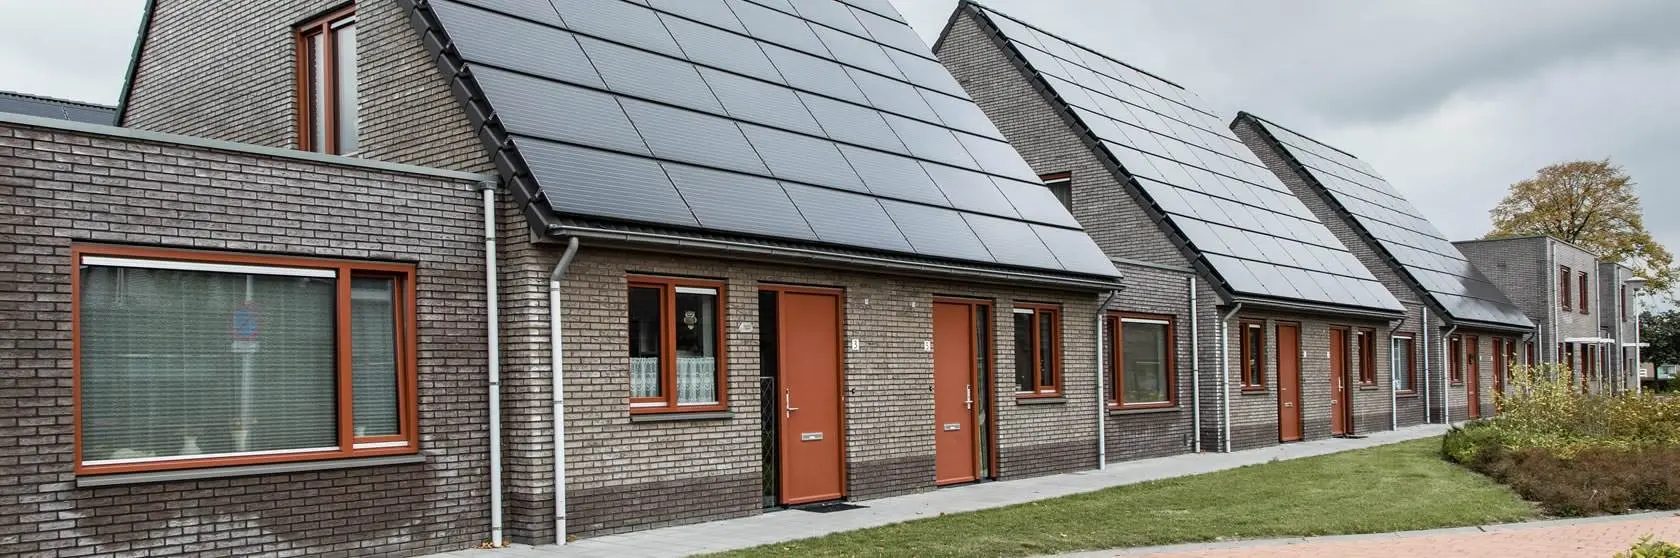 Duurzaamheidsconcepten van installatiebedrijf Mampaey actief in Zwammerdam en omgeving